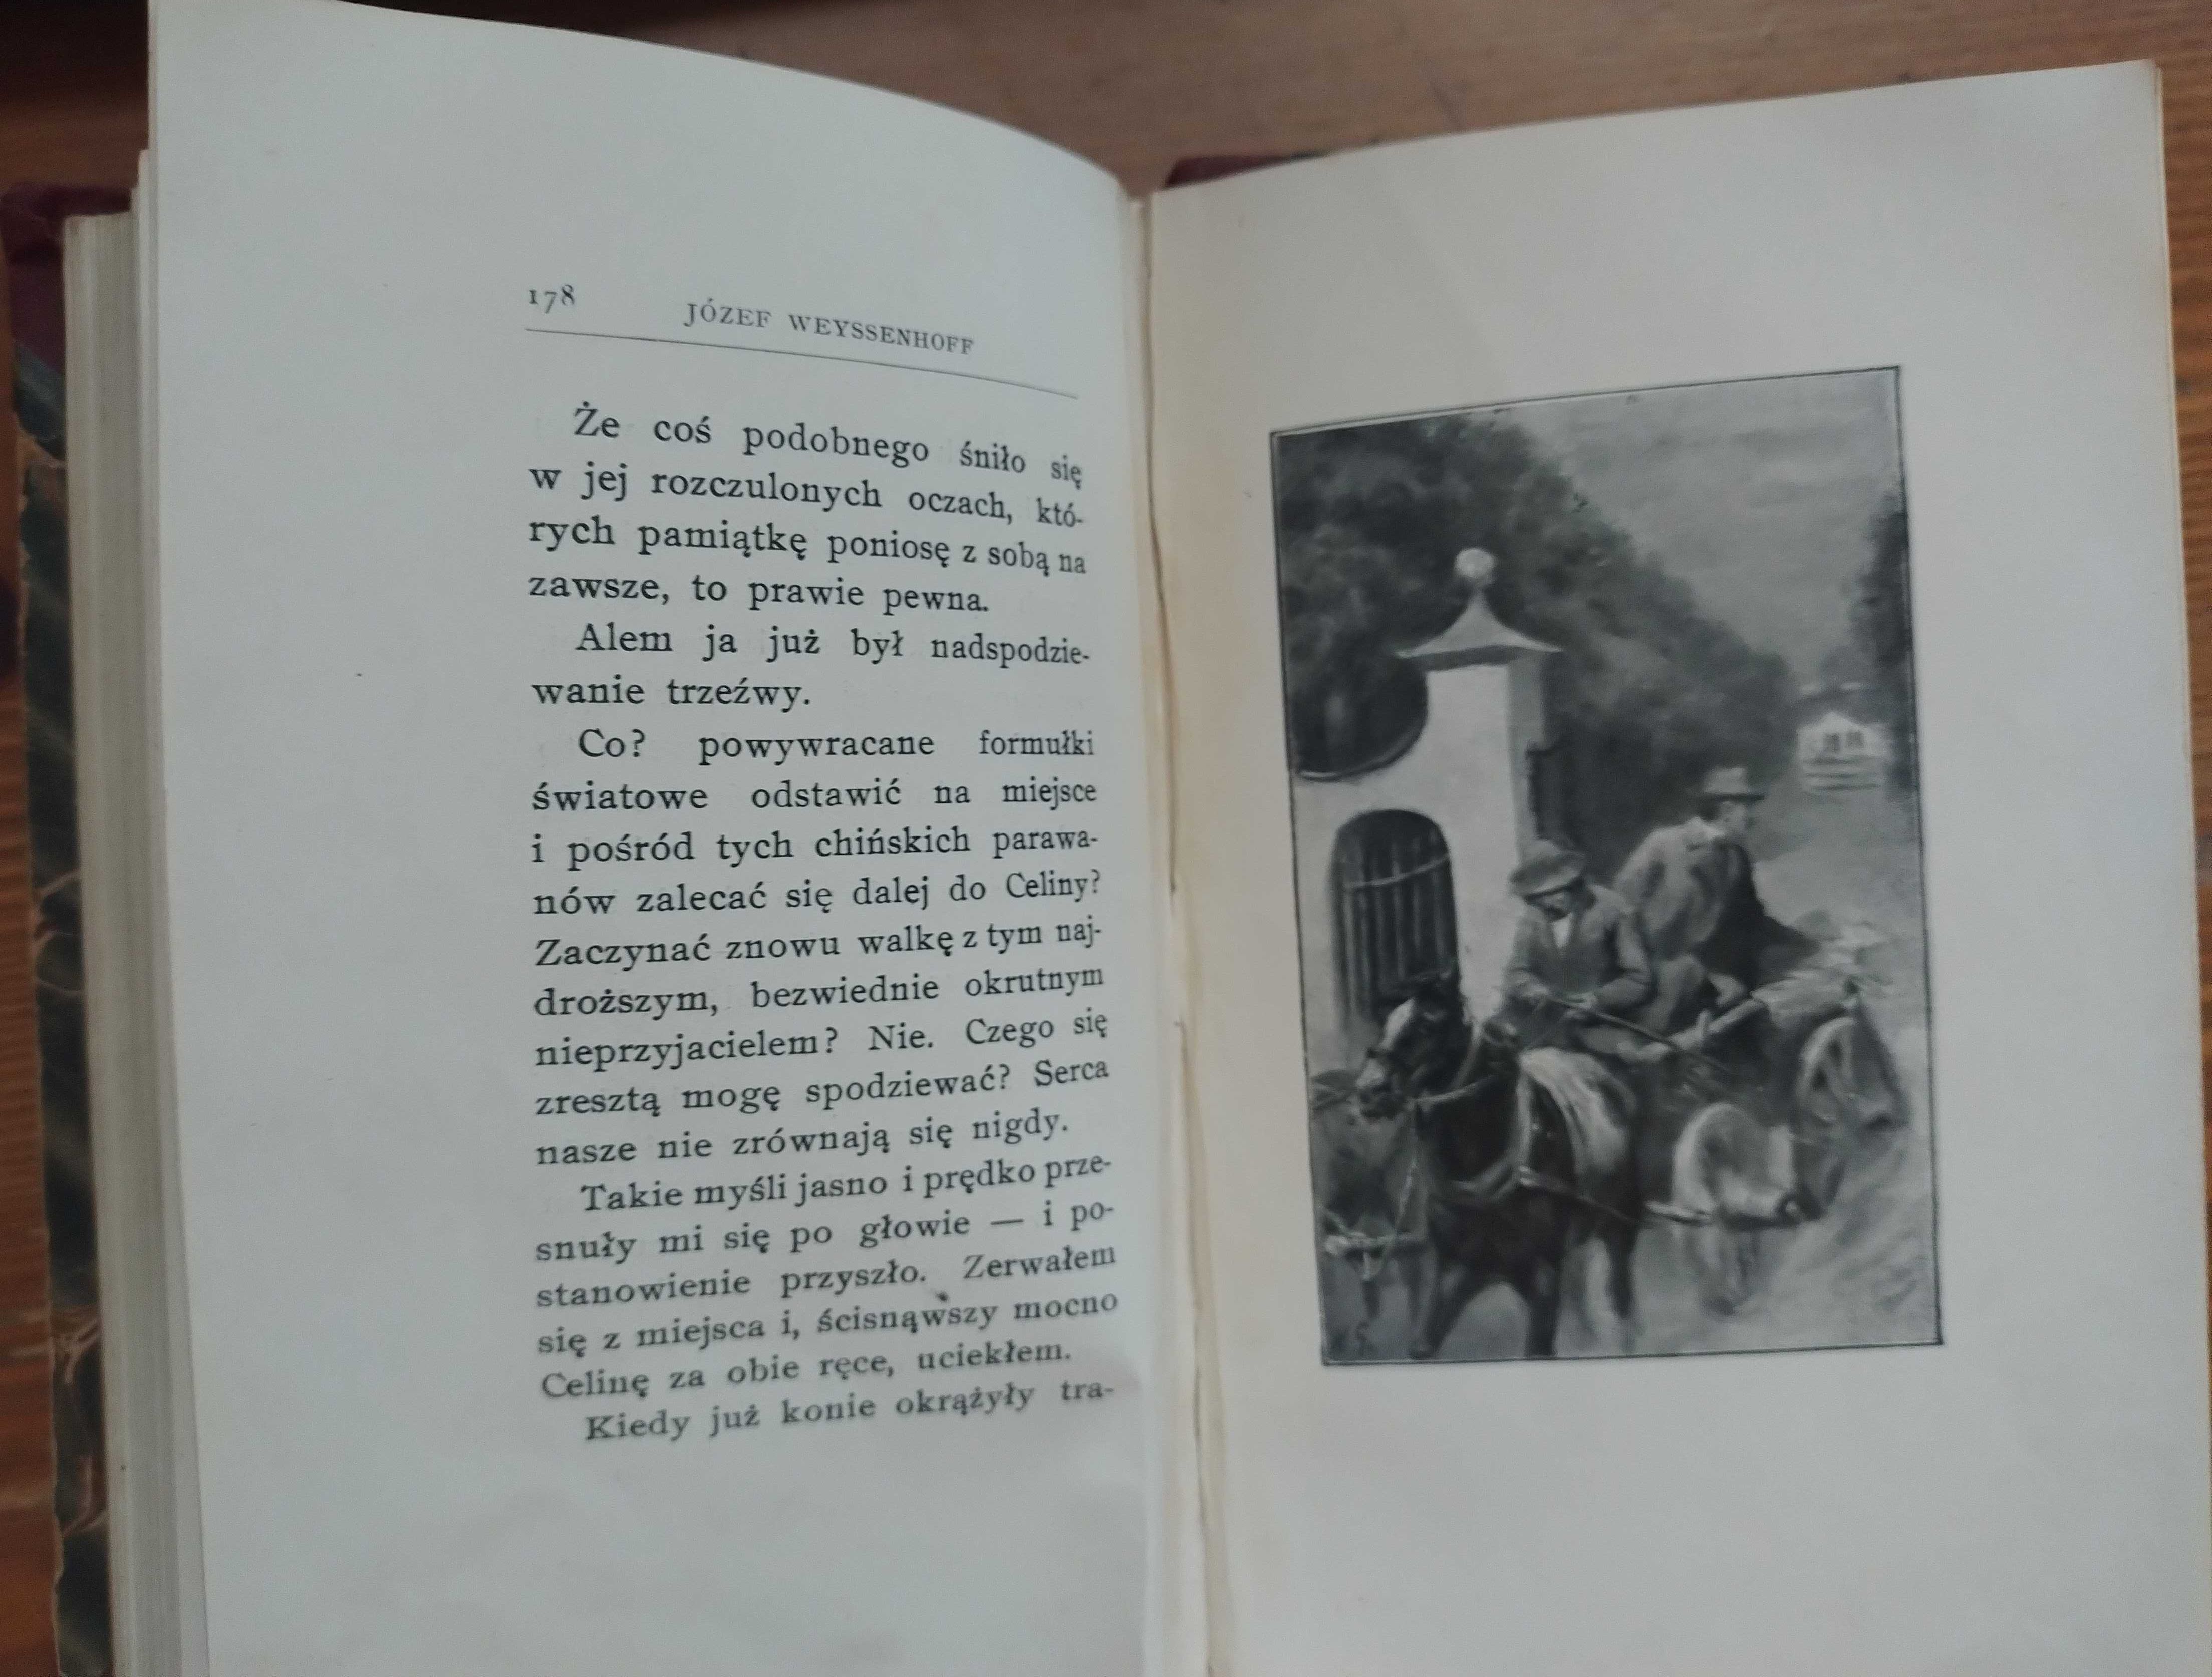 Zaręczyny Jana Bełzkiego  Józef Weyssenhoff, wydanie II, 1904 rok, bdb